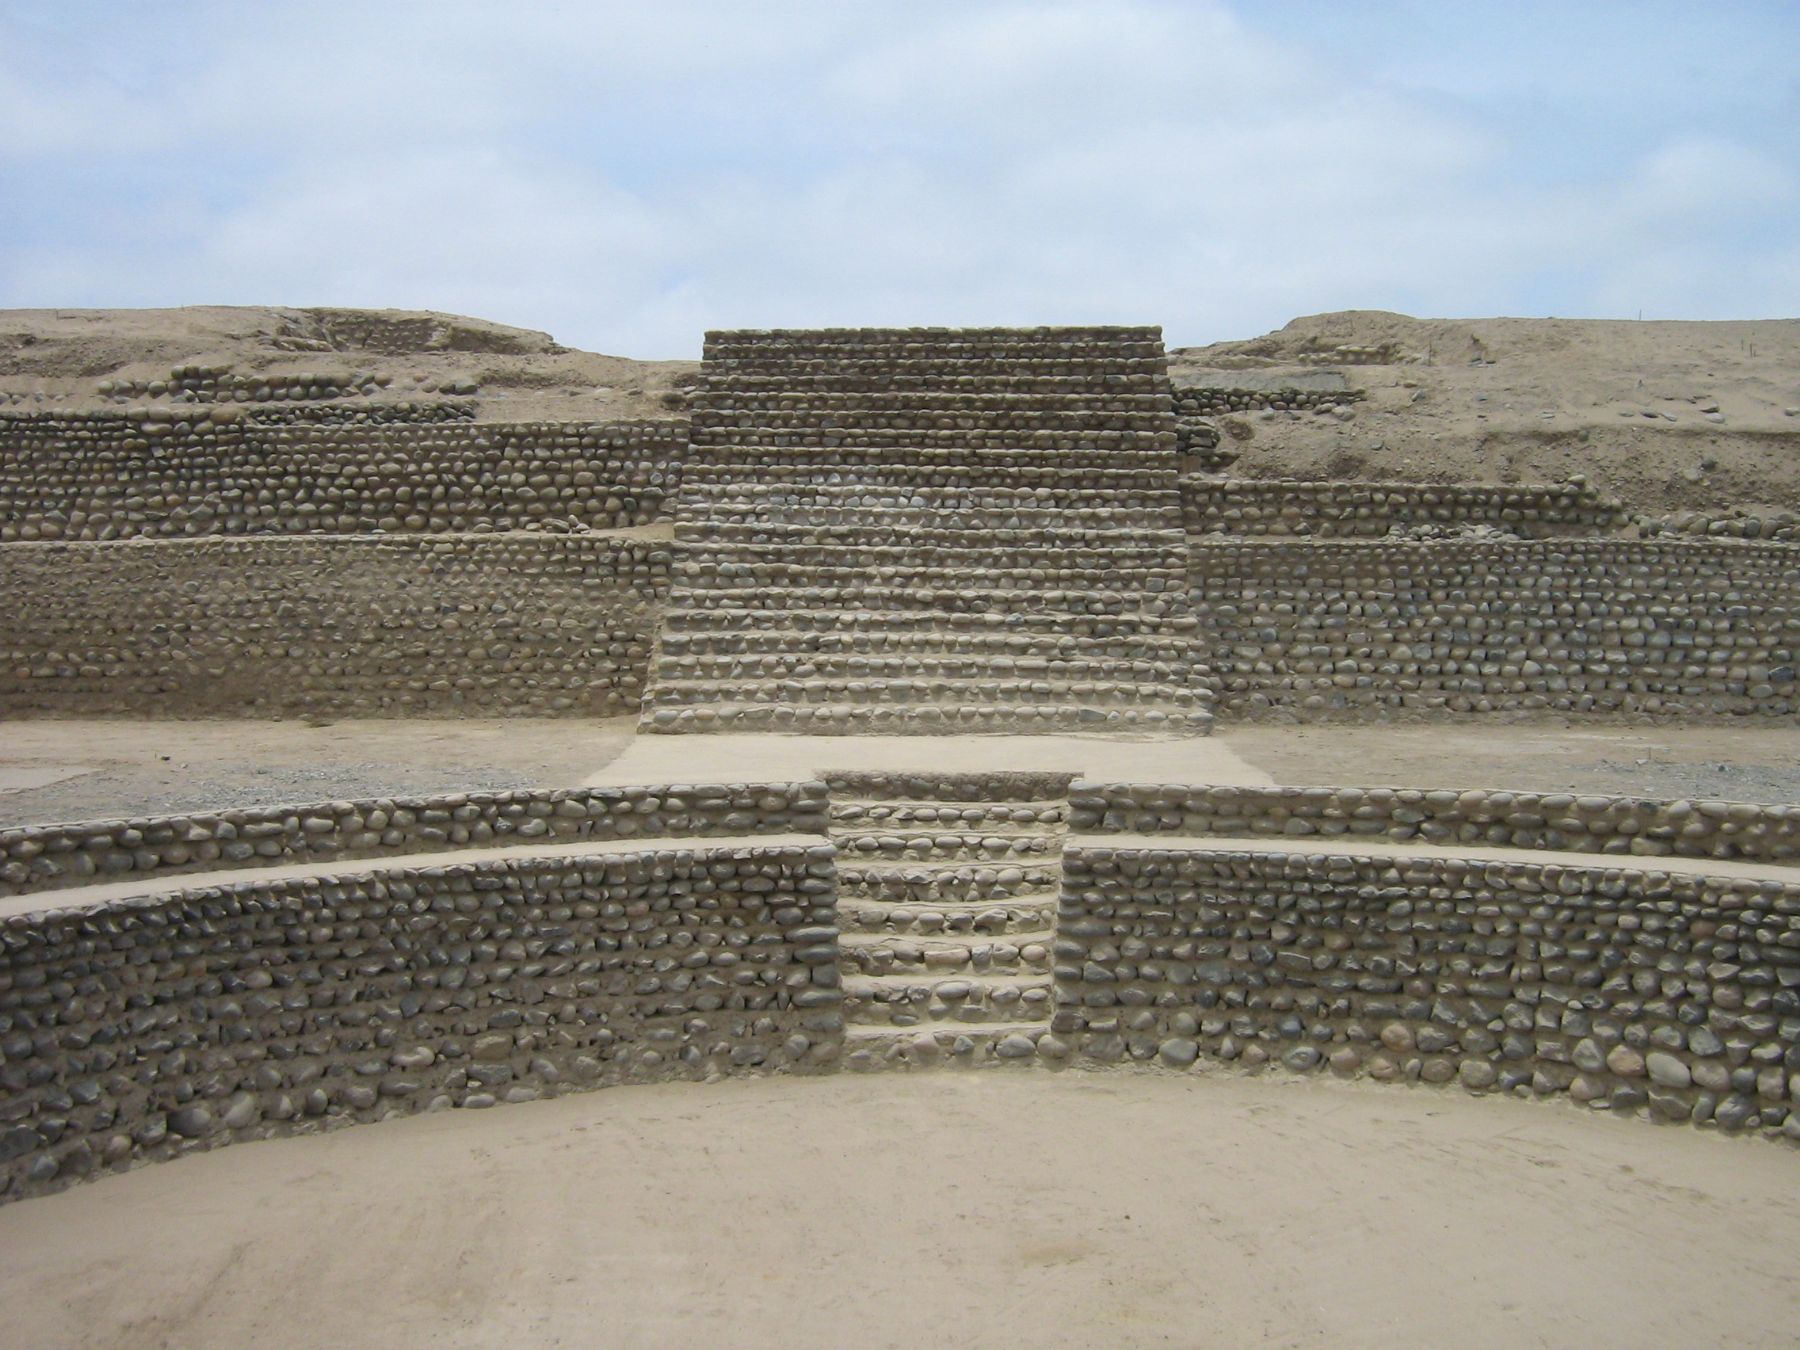 Gobierno Regional de Lima y la Municipalidad Provincial de Huaura han invirtido S/. 2 millones en el segundo de los tres años correspondientes al Proyecto Arqueológico Bandurria.